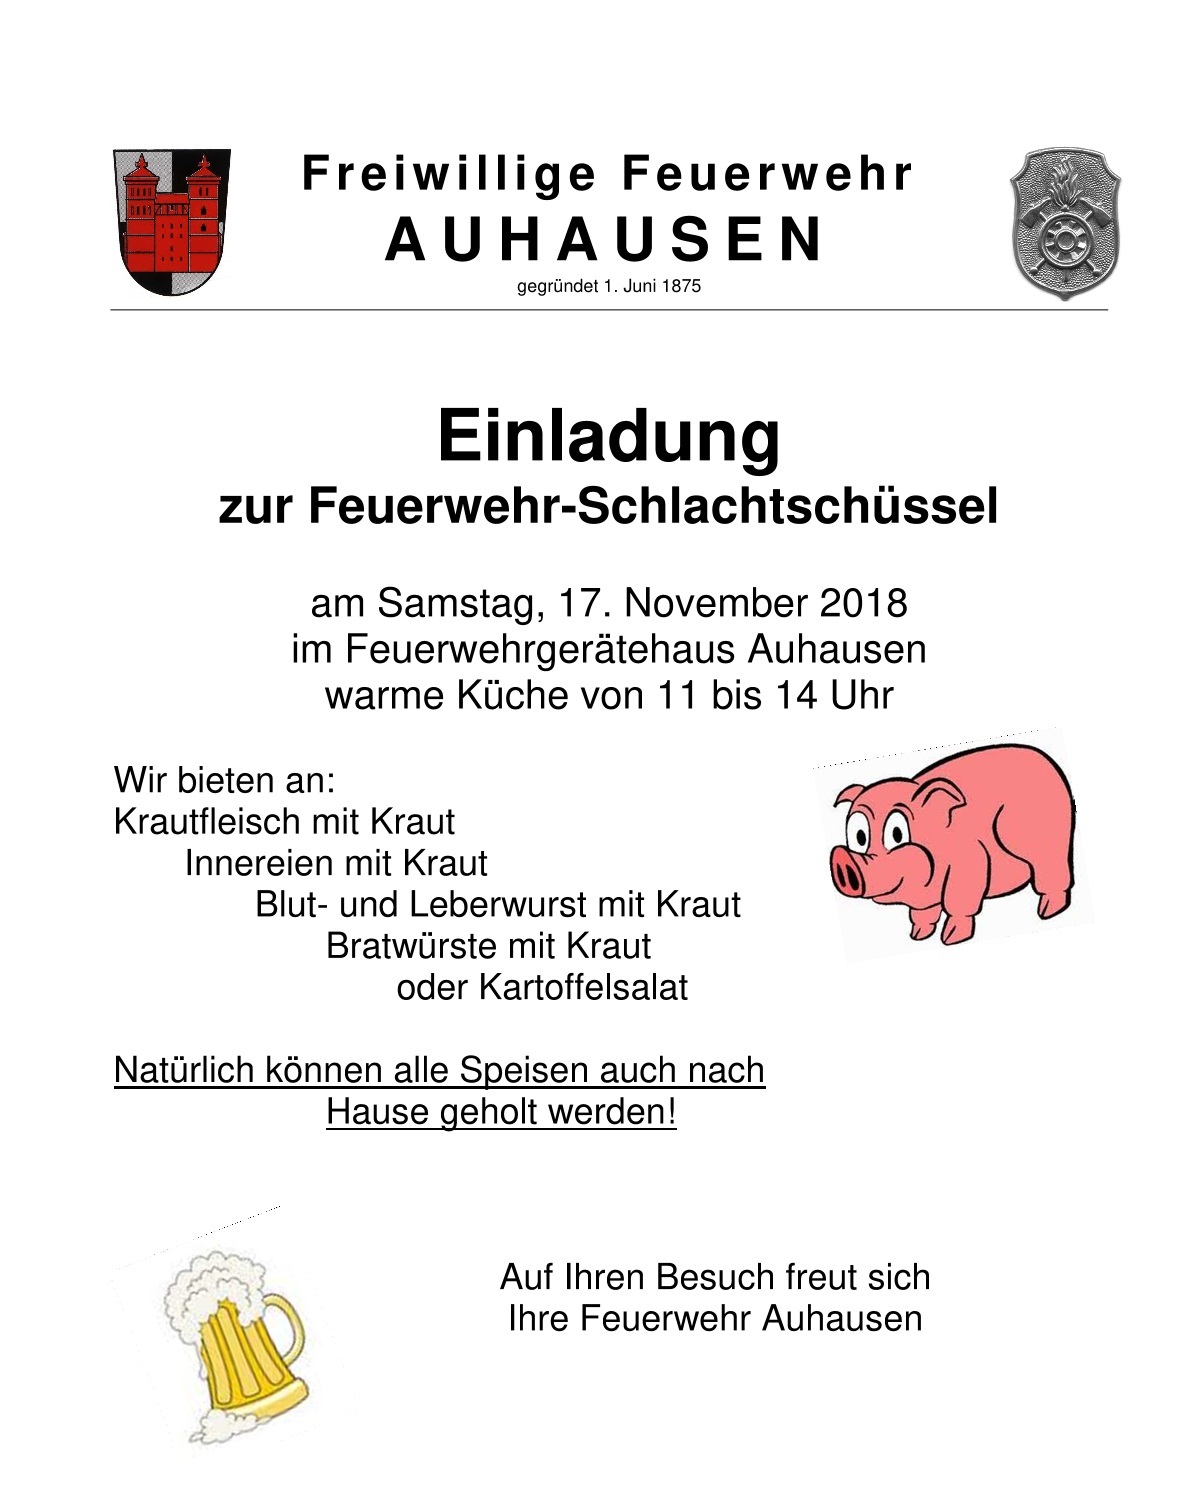 FFW Auhausen - Einladung Schlachtschüssel 2018